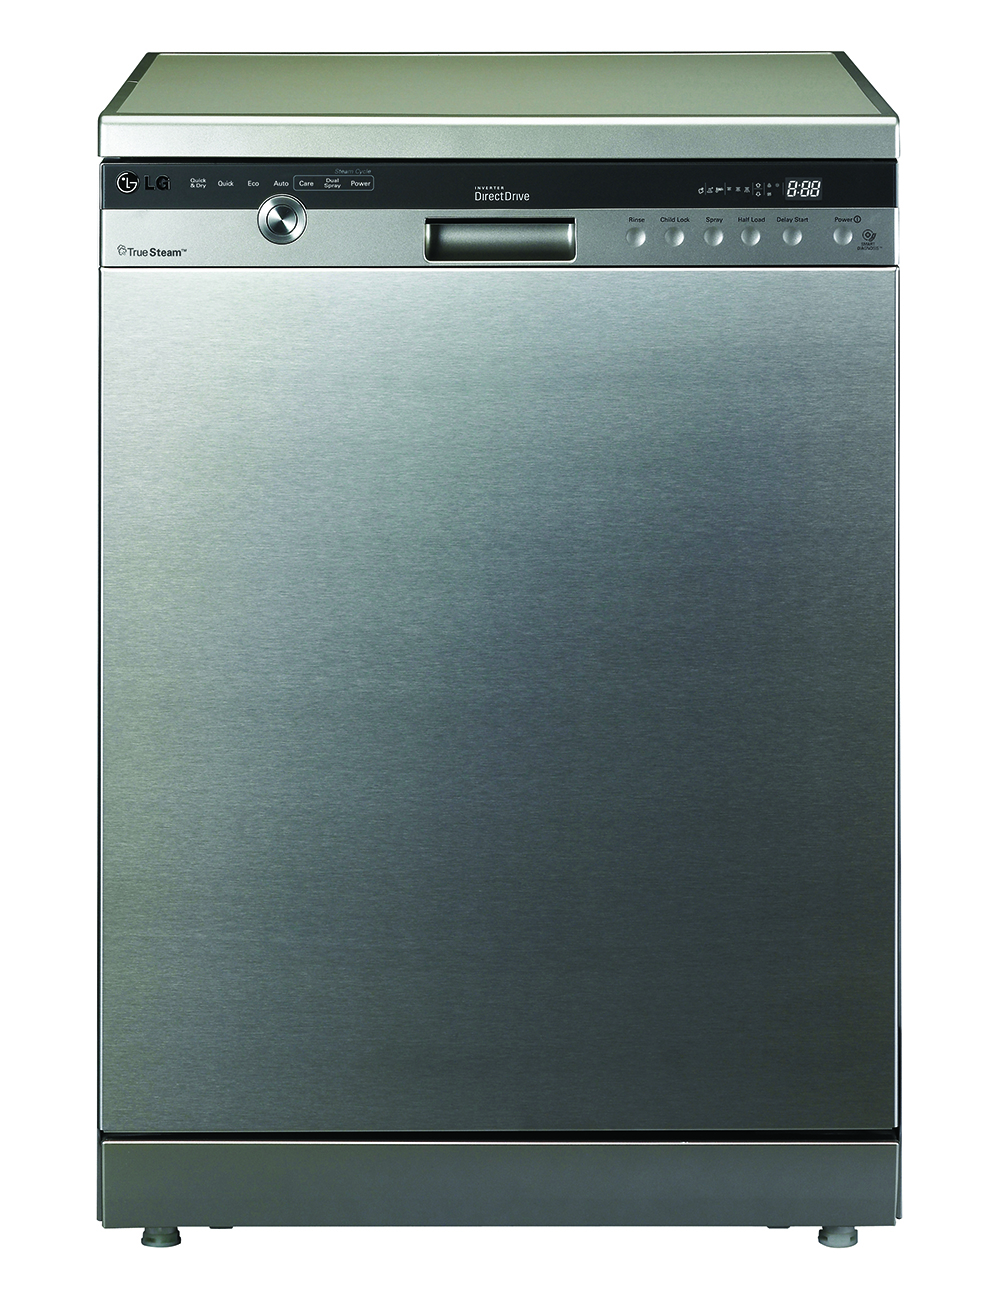 LG-Dishwasher-appliances